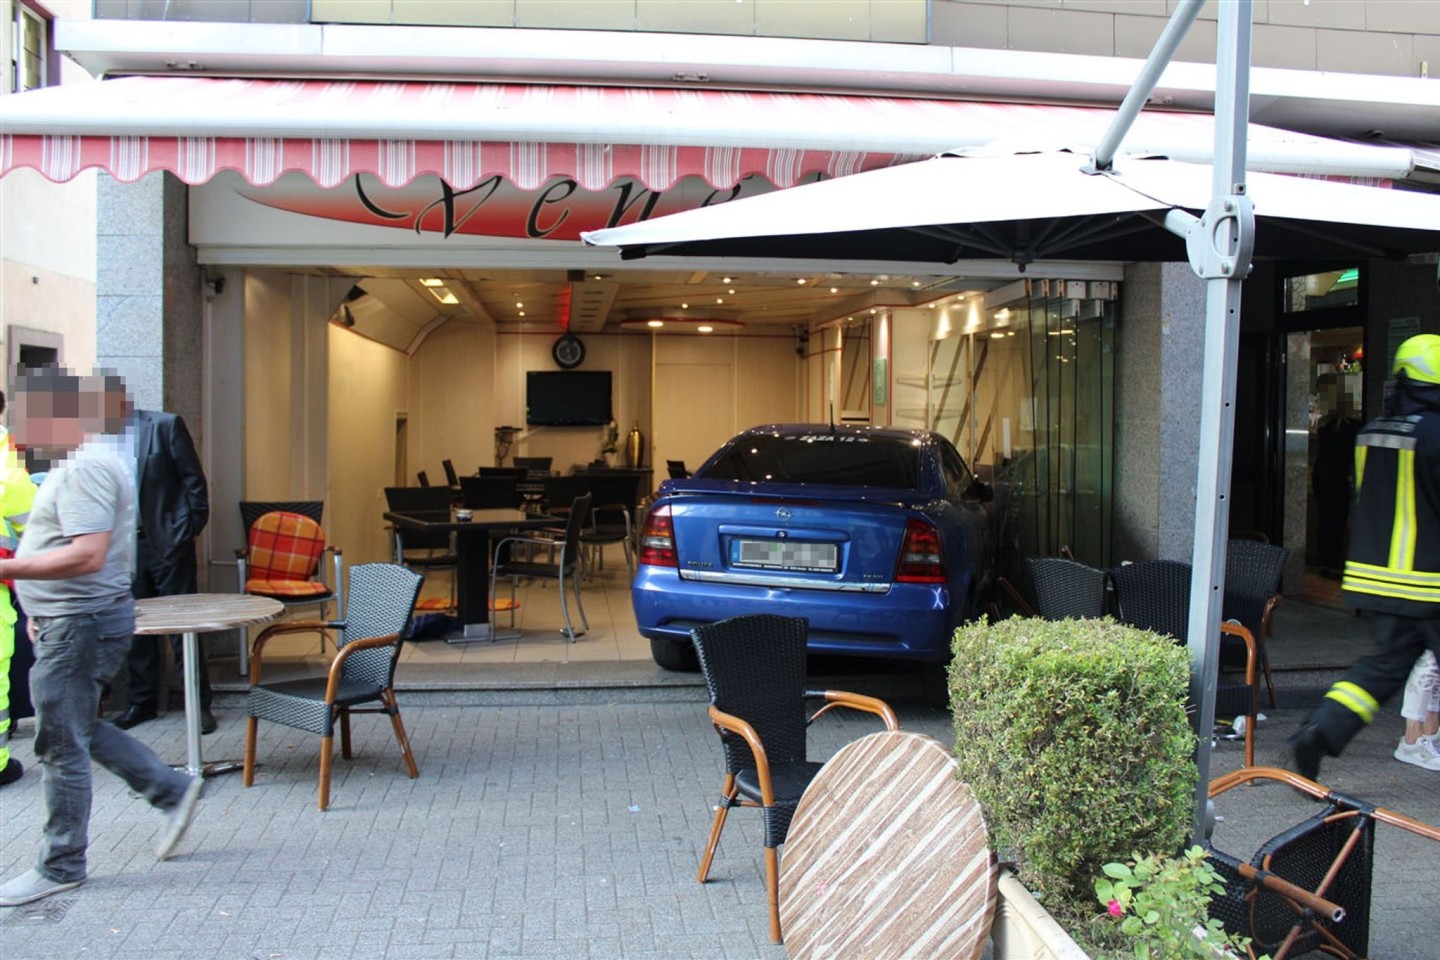 Ein Achtjähriger fuhr mit dem Auto seines Vaters direkt in das Eiscafé in Gelsenkirchen.